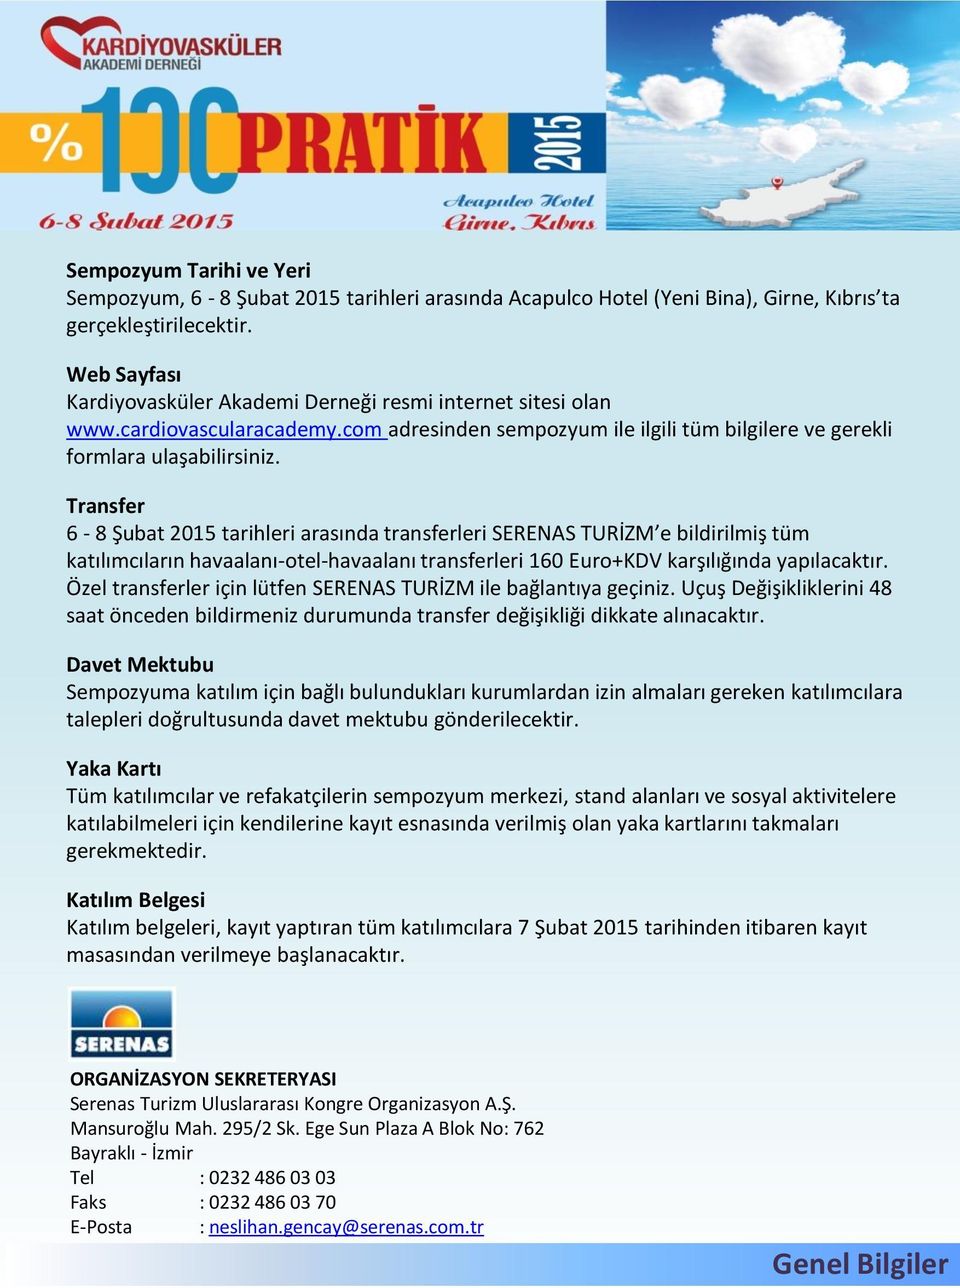 Transfer 6-8 Şubat 2015 tarihleri arasında transferleri SERENAS TURİZM e bildirilmiş tüm katılımcıların havaalanı-otel-havaalanı transferleri 160 Euro+KDV karşılığında yapılacaktır.